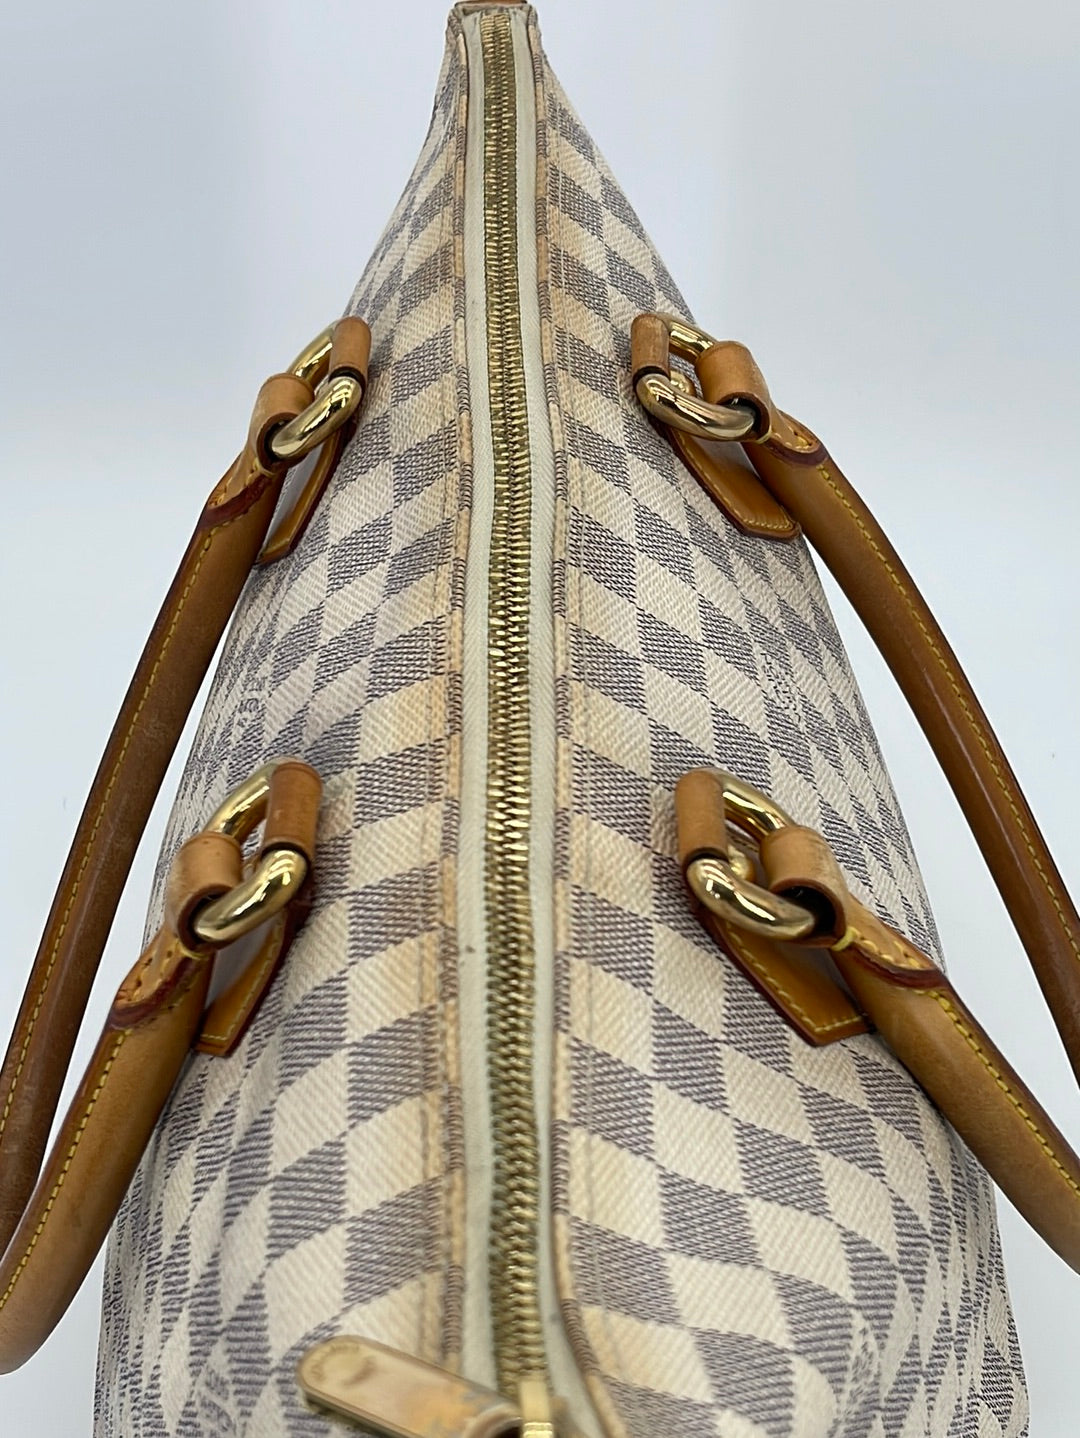 Louis Vuitton Damier Canvas Saleya MM Bag - Yoogi's Closet